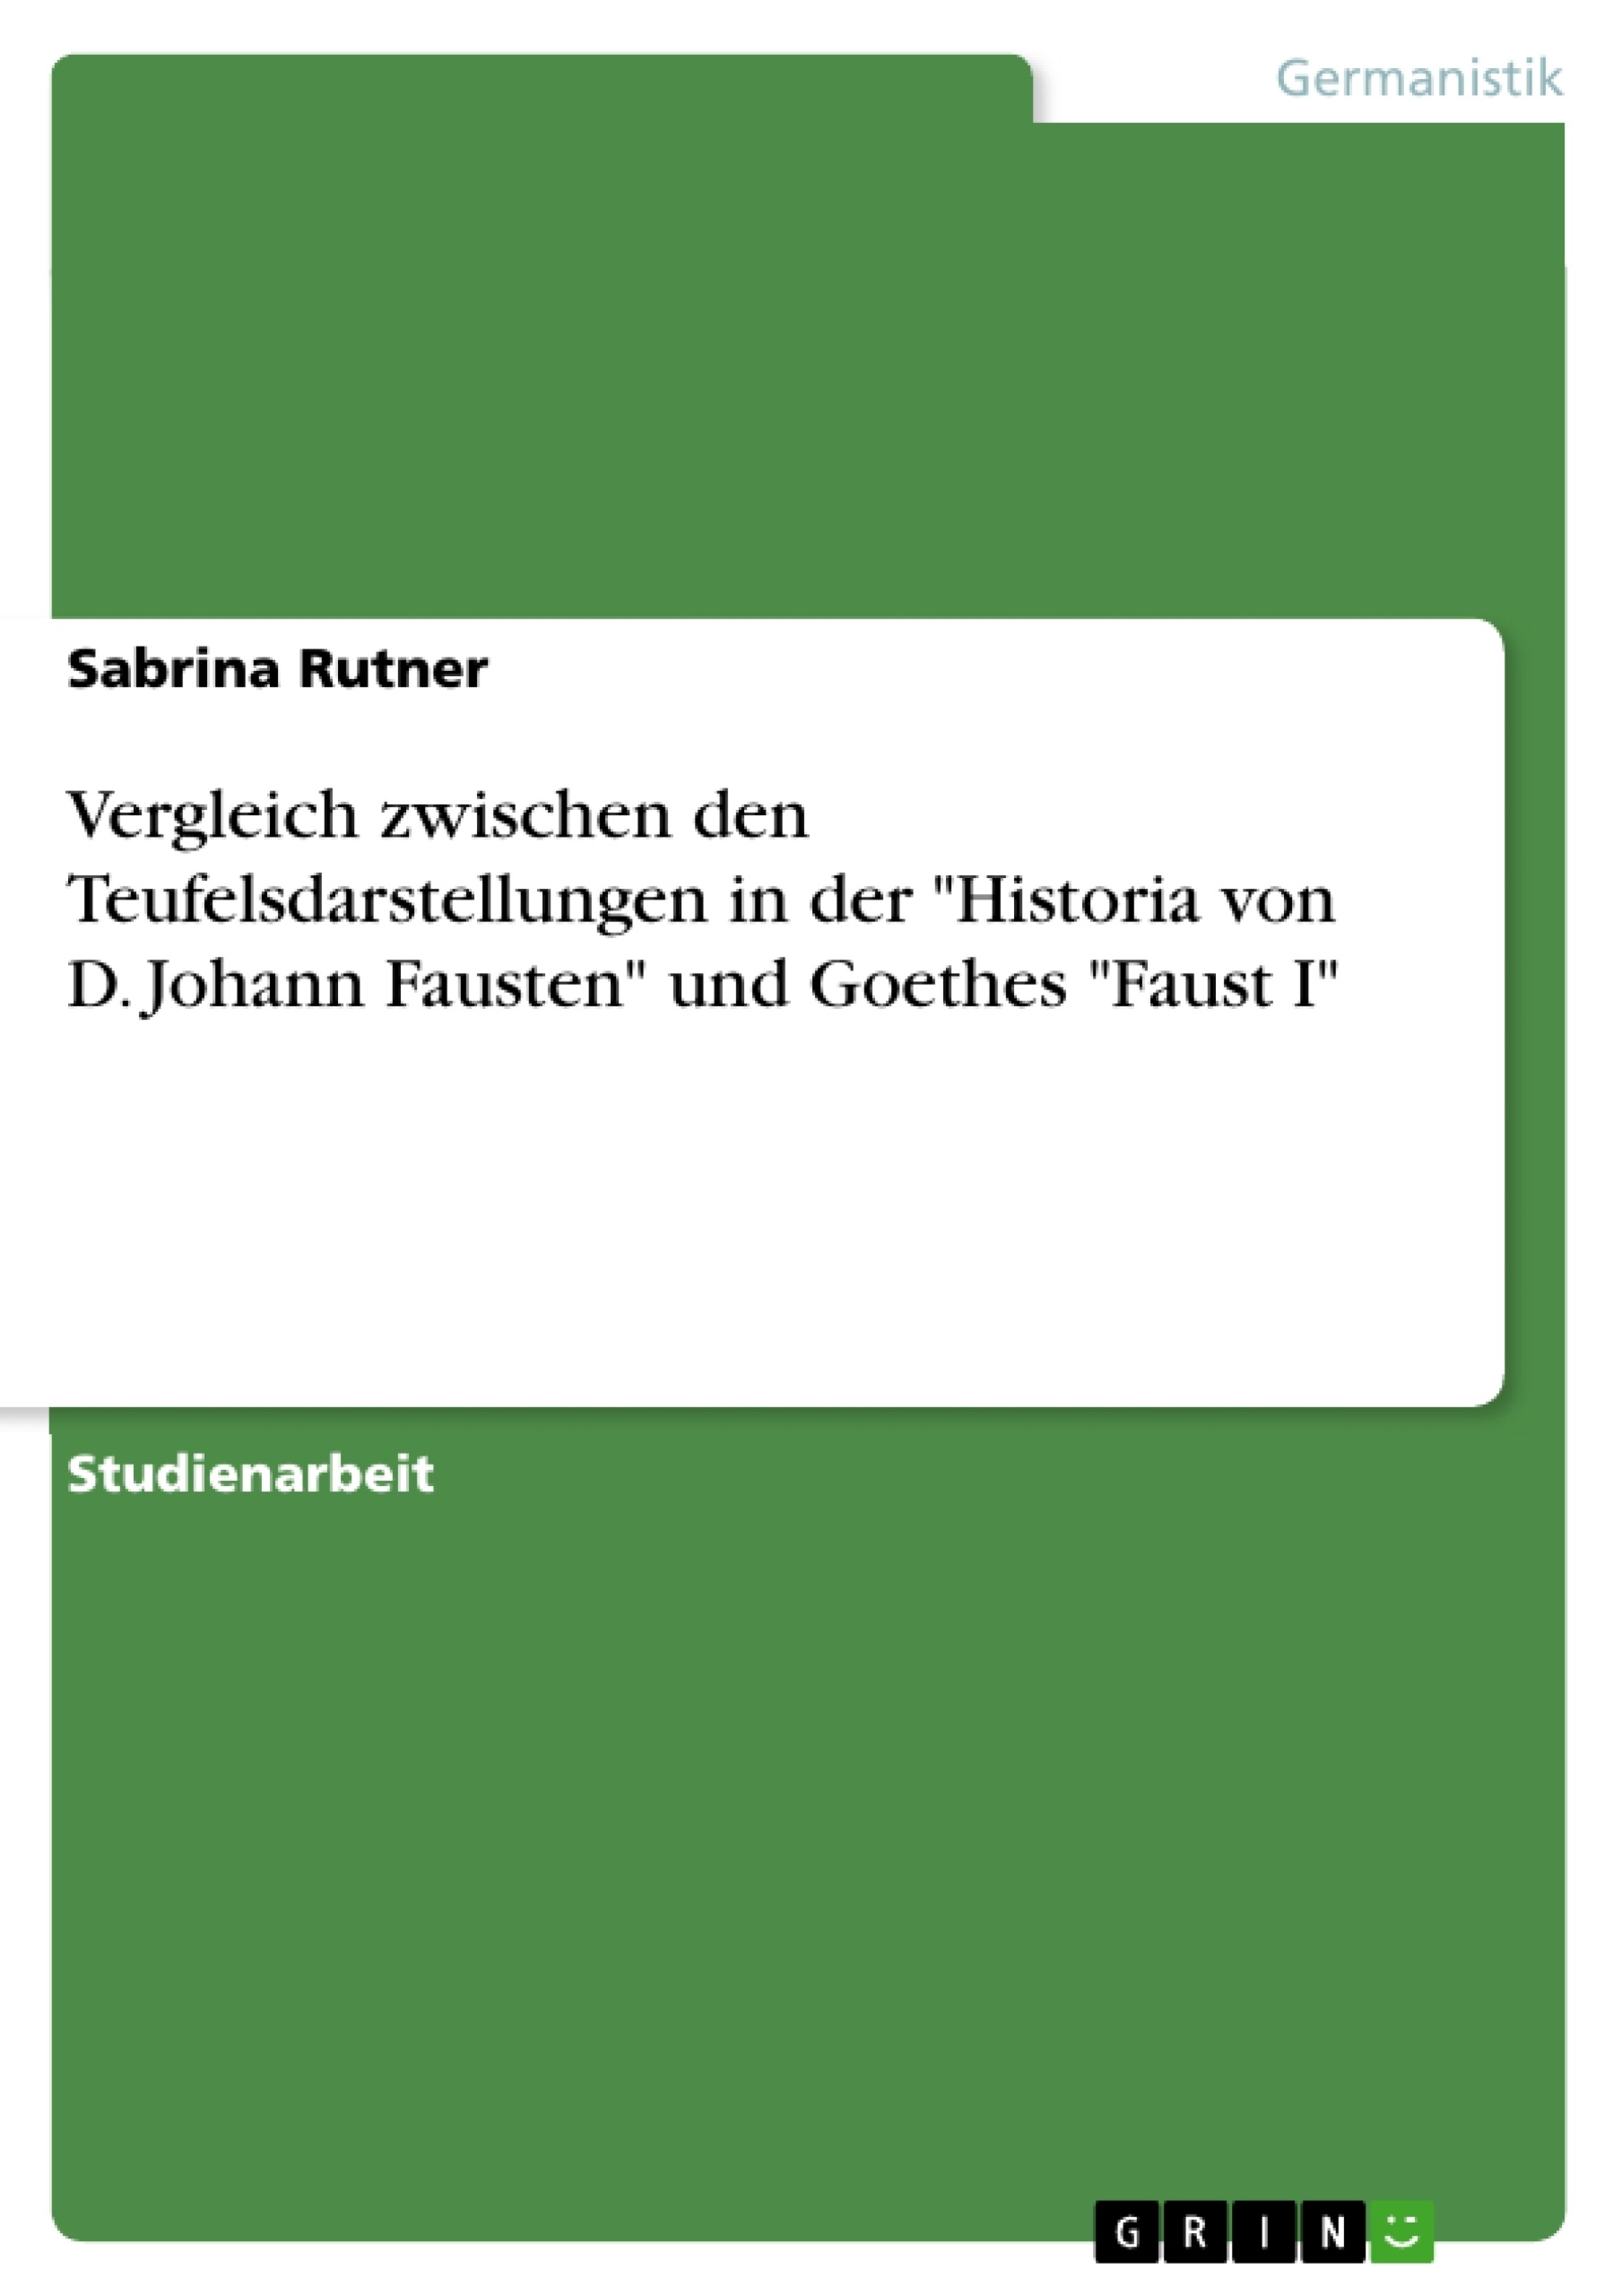 Titel: Vergleich zwischen den Teufelsdarstellungen in der "Historia von D. Johann Fausten" und Goethes "Faust I"